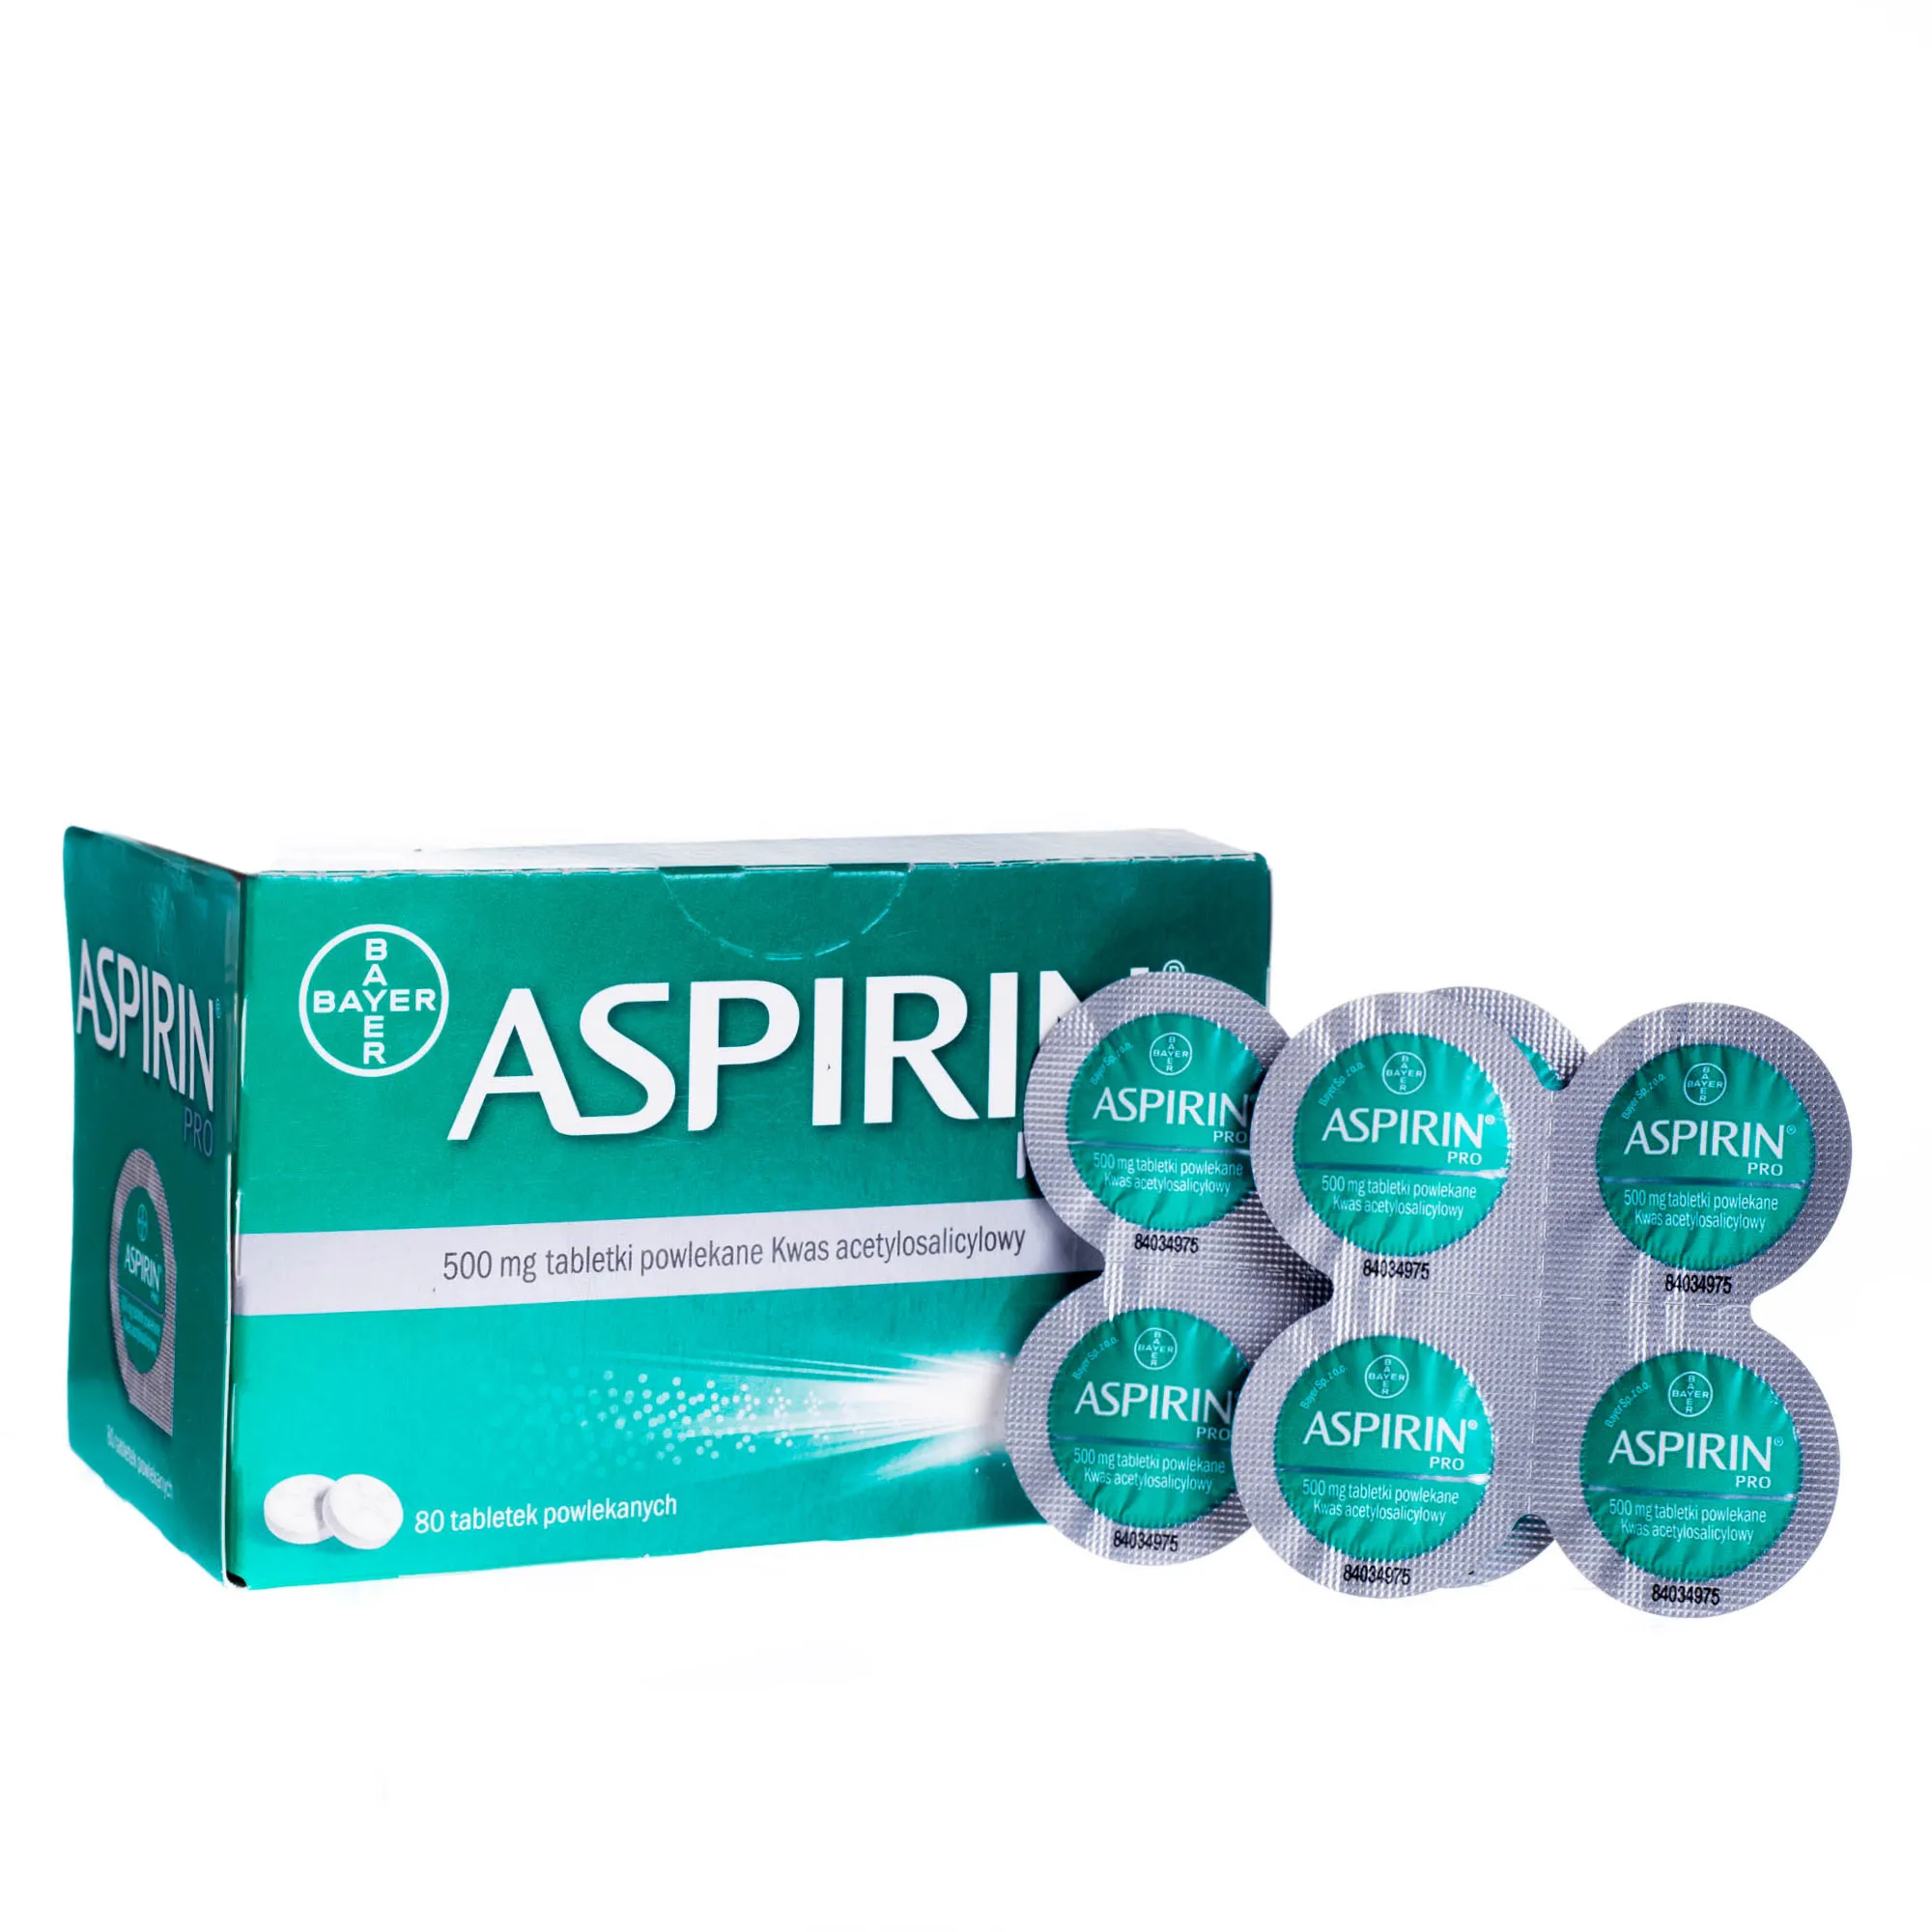 Aspirin Pro tabletki powlekany Kwas acetylkosalicylowy 500 mg / 80 tabletek powlekanych 